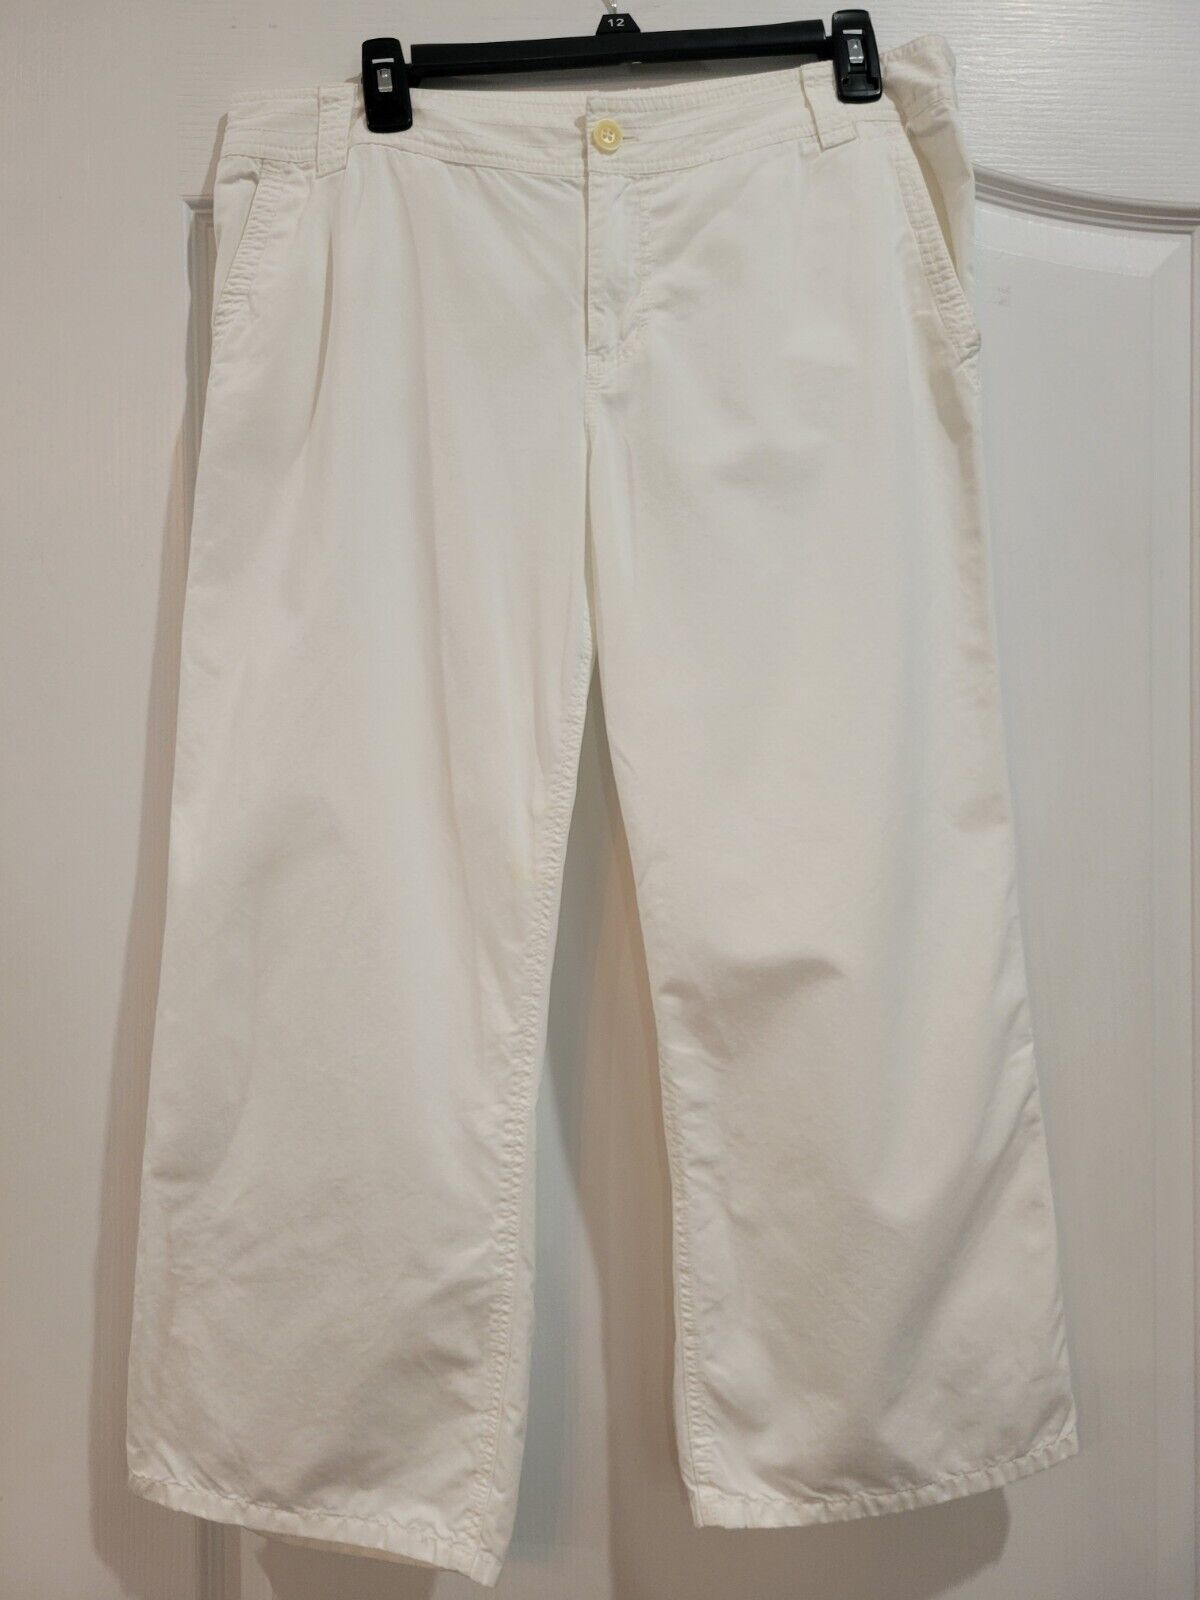 Tommy Bahama Capris Women's Size 12 100% Cotton White Pants Wide Leg Flat Front